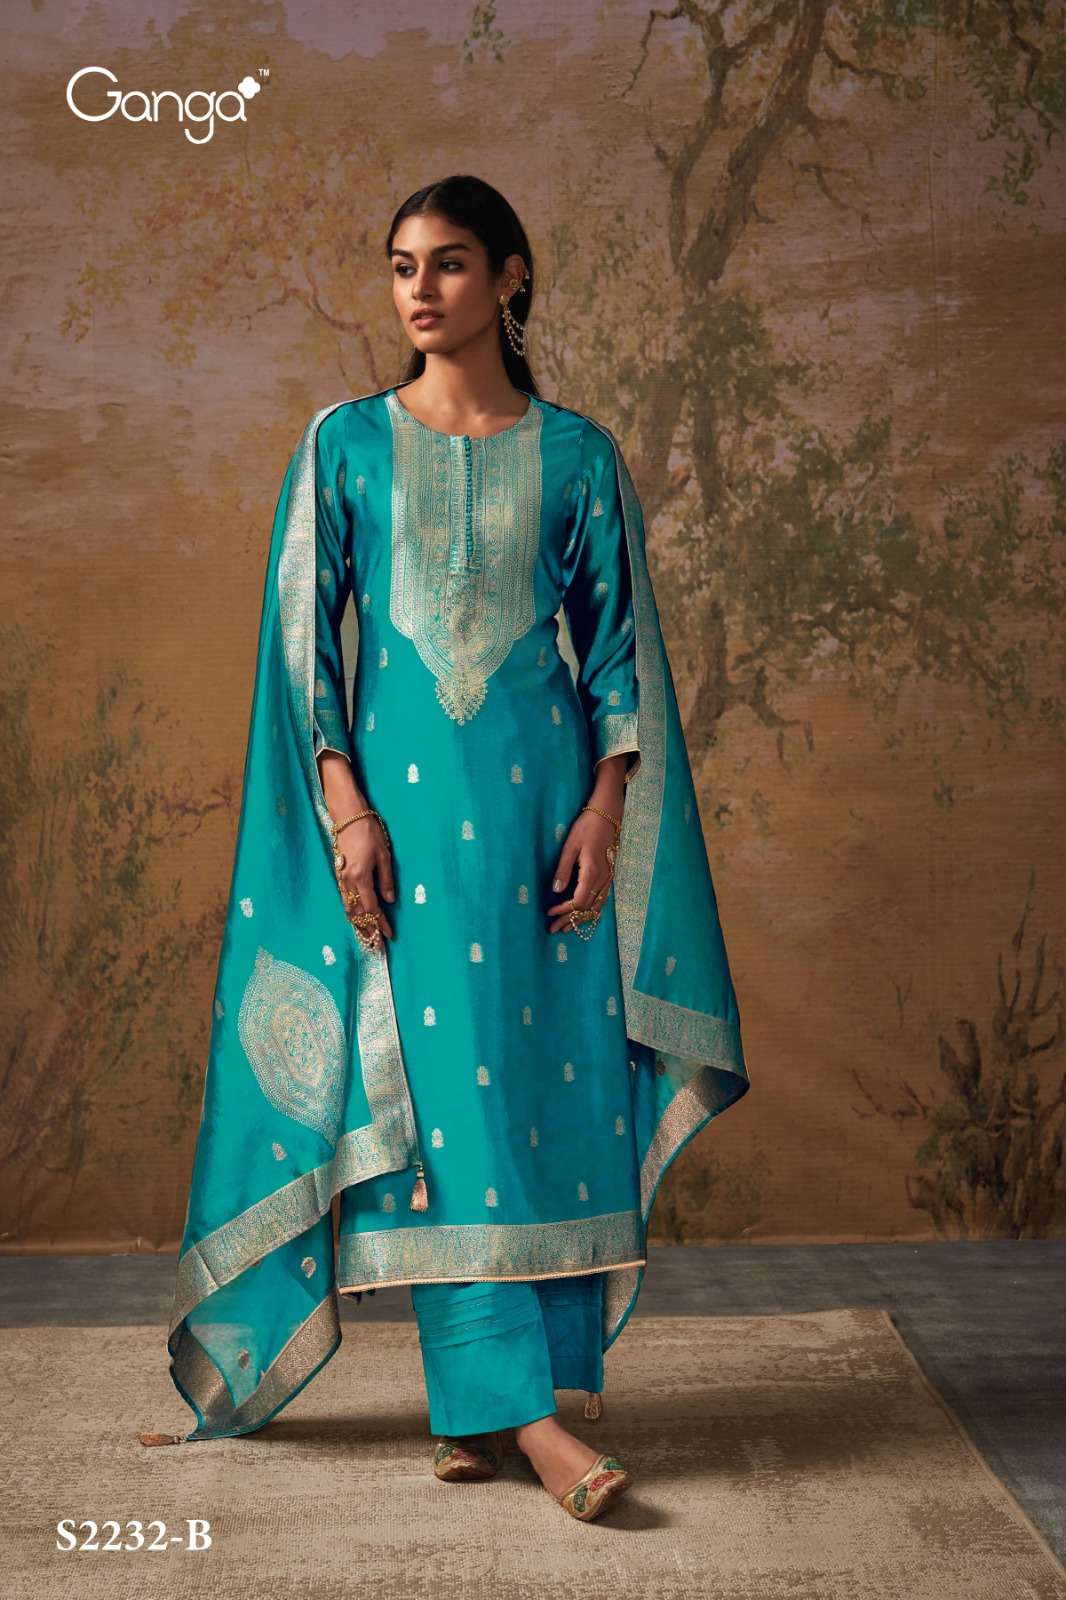 Ganga Ladies Suits , Ganga Designer Suit , Designer Ganga Suit , Ganga  Suits Supplier at Rs 1670/piece | Ganga Ladies Suits in Surat | ID:  23466261012